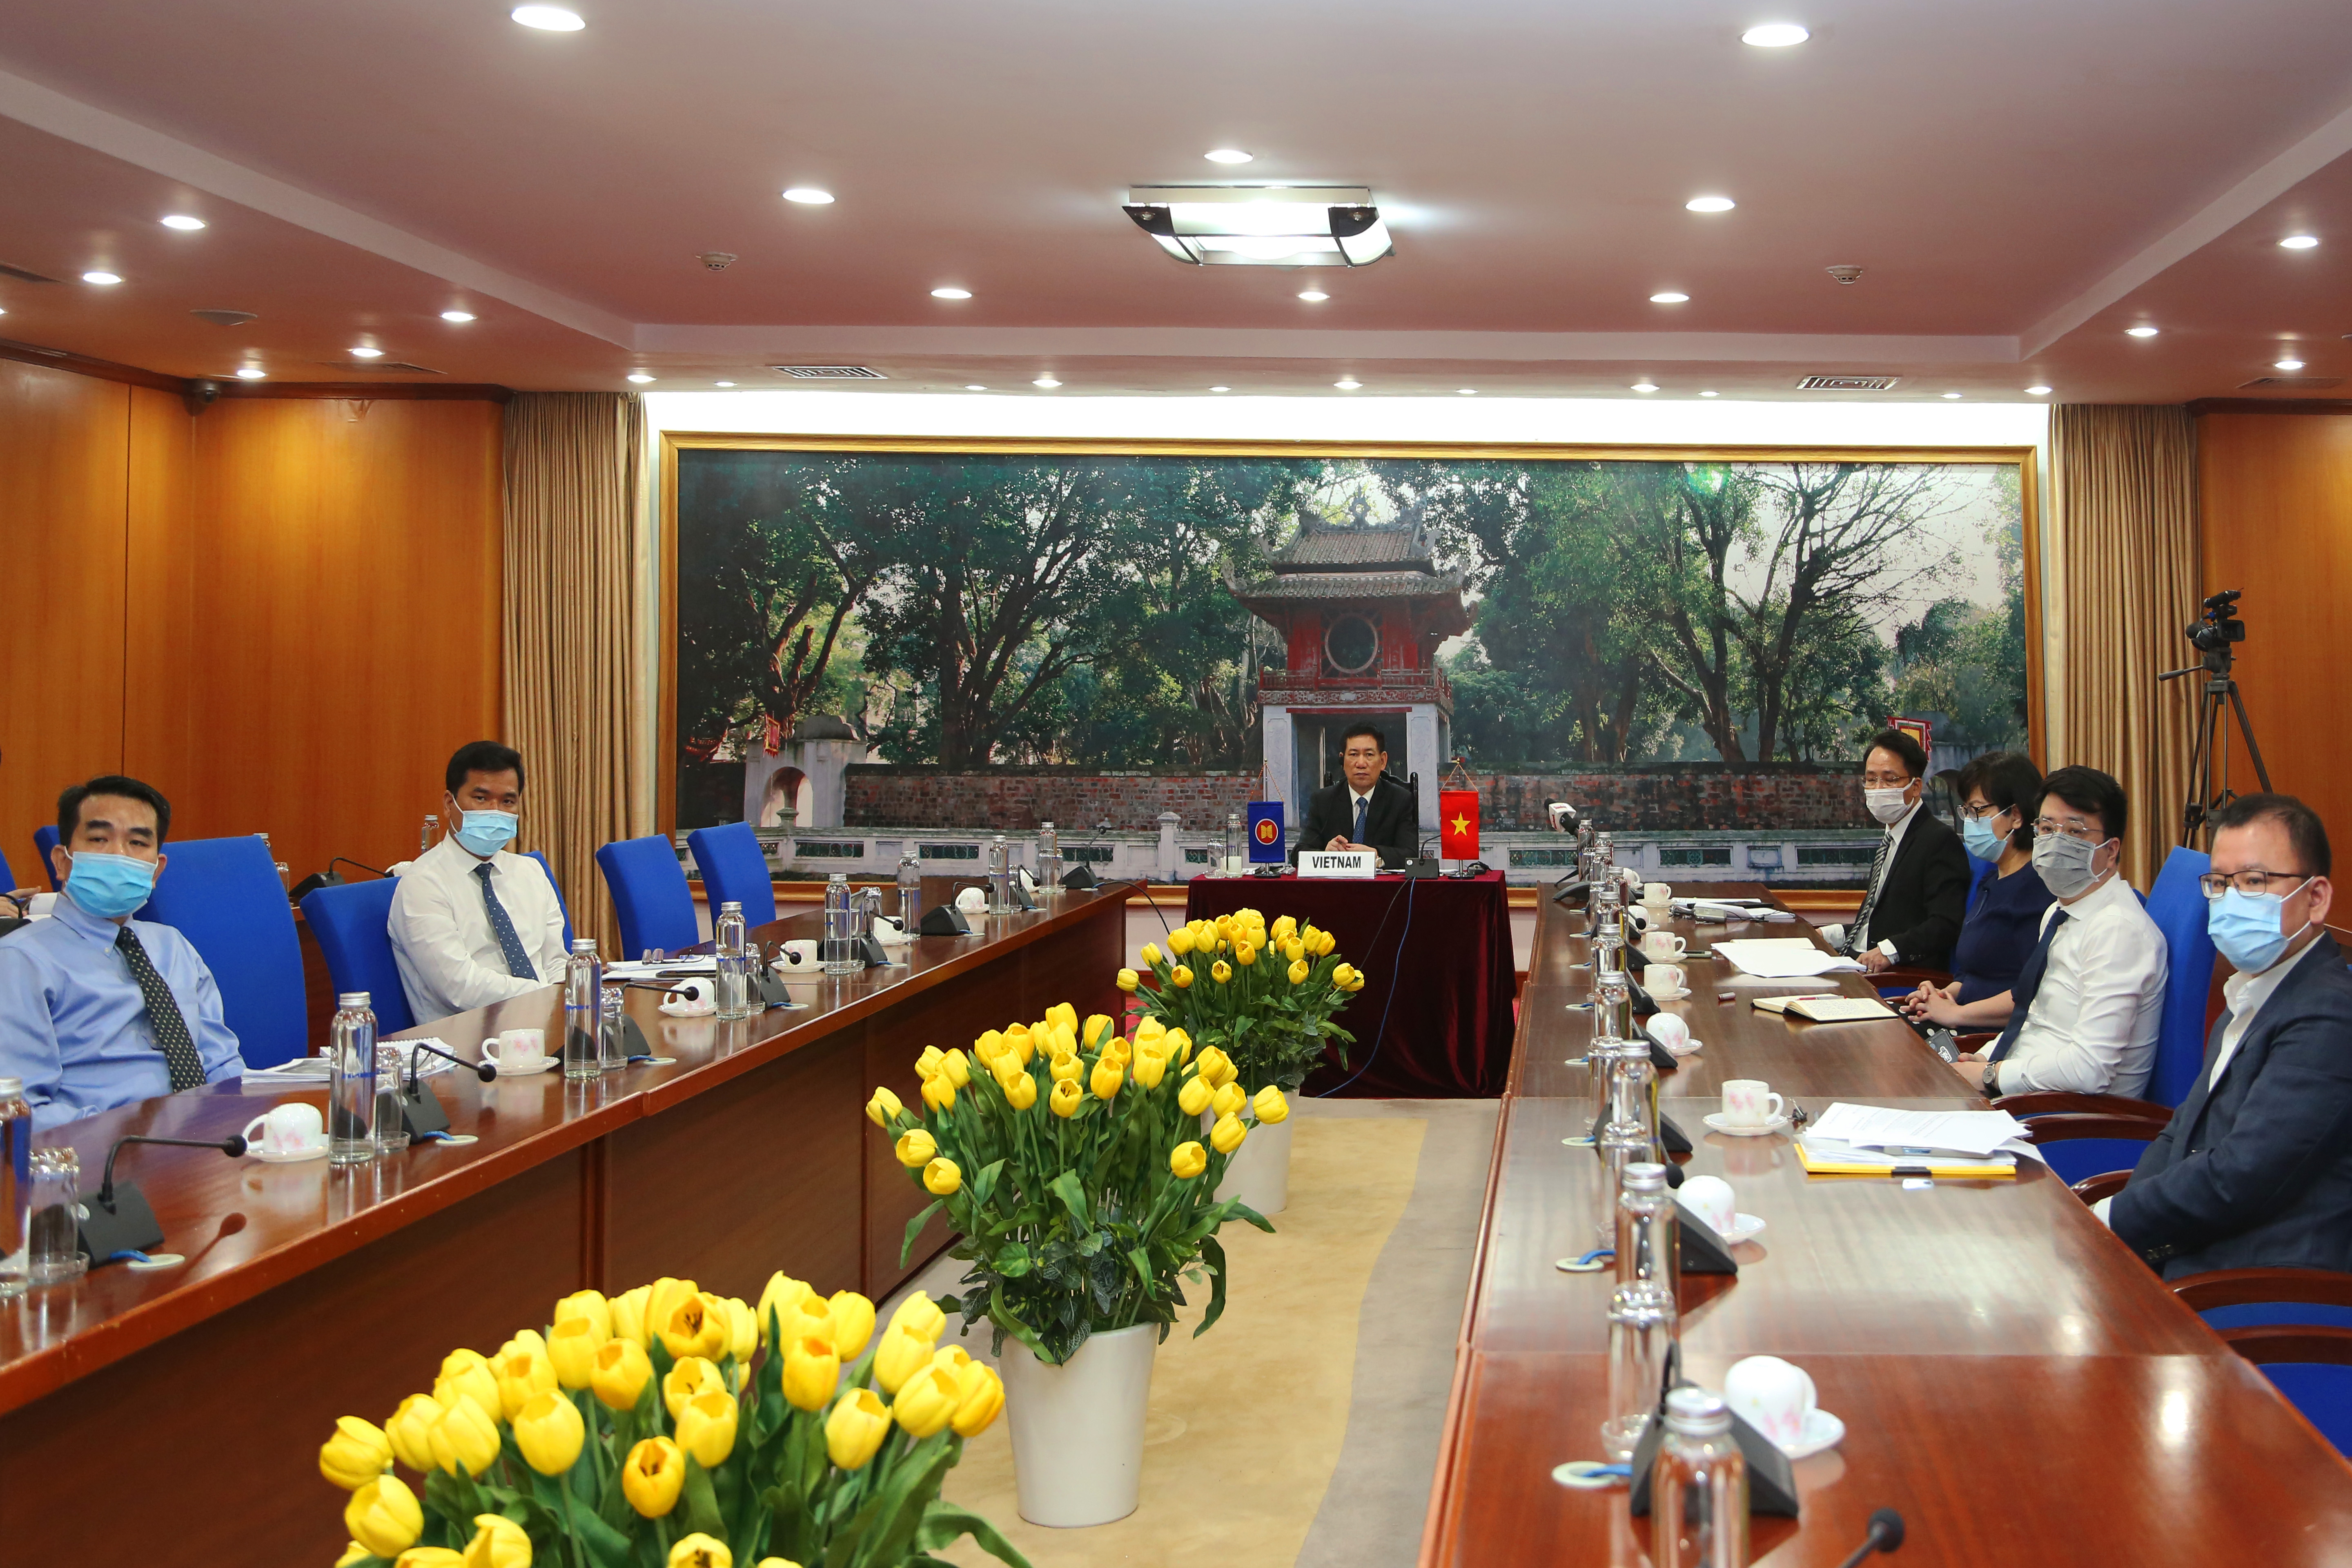 Bộ trưởng Hồ Đức Phớc và đoàn đại biểu Bộ Tài chính Việt Nam tham dự Hội nghị Bộ trưởng Tài chính và Thống đốc Ngân hàng trung ương ASEAN+3 lần thứ 24 tại điểm cầu Bộ Tài chính Việt Nam, ngày 3/5/2021.